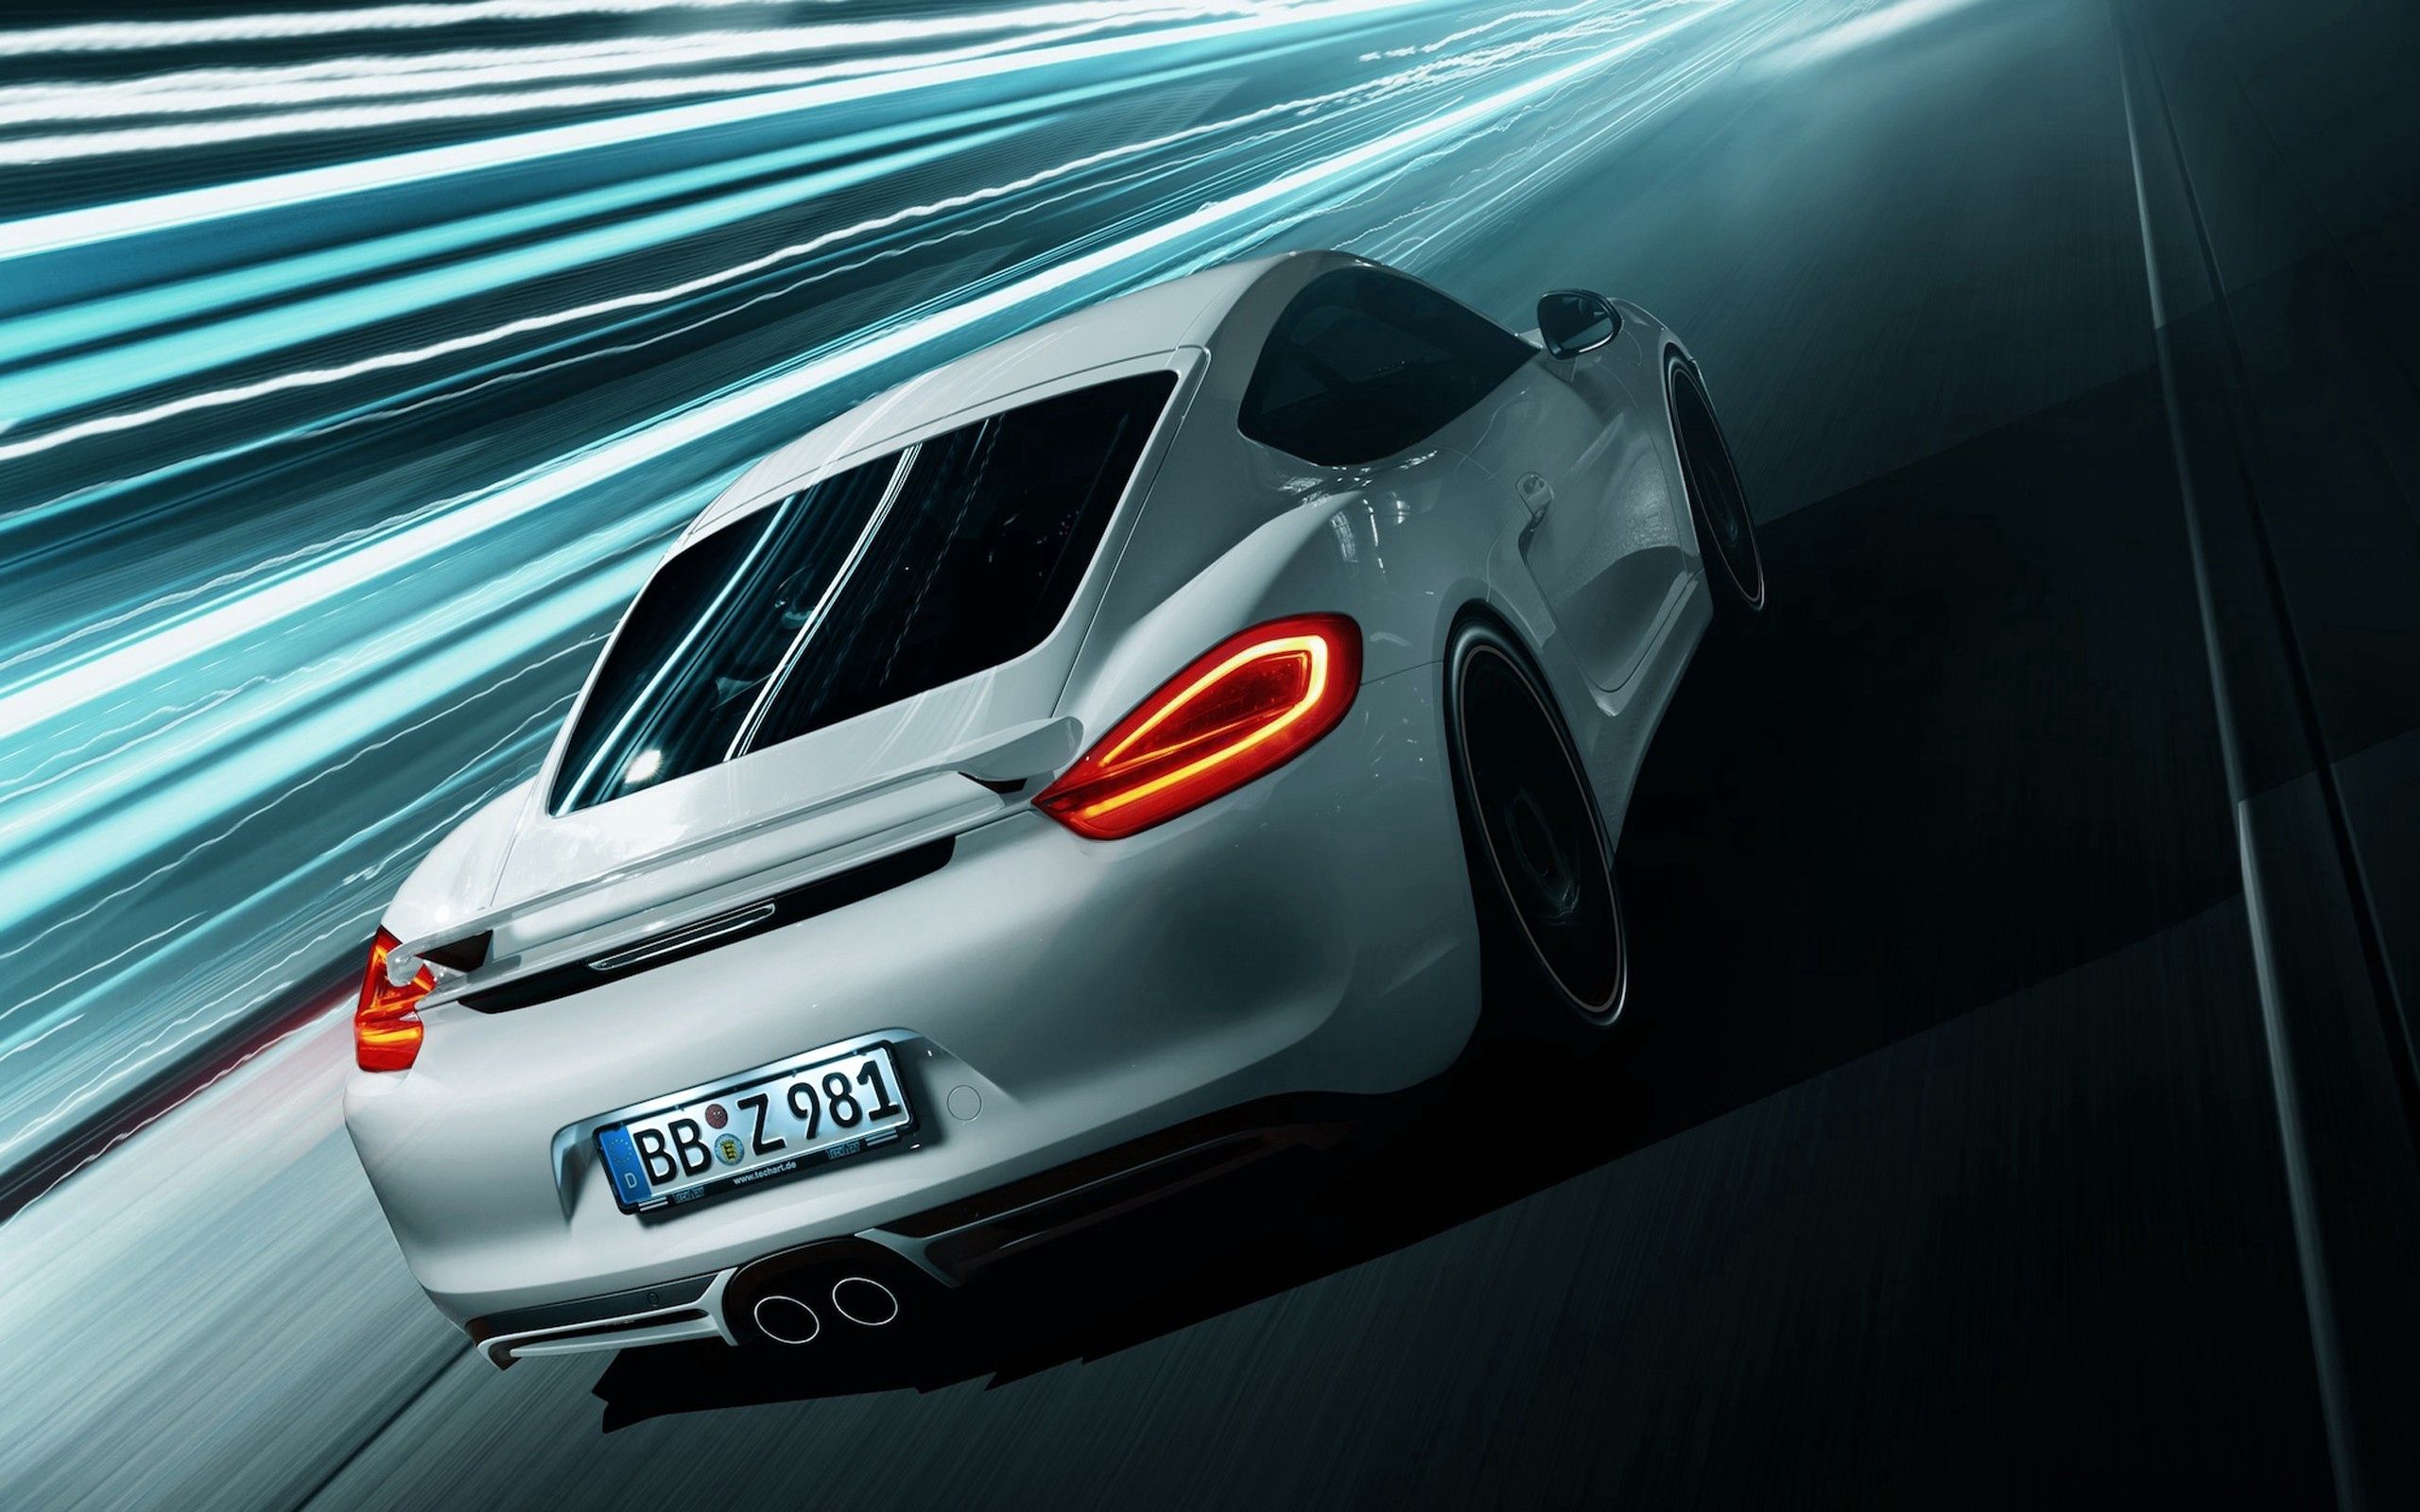 Descarga gratuita de fondo de pantalla para móvil de Porsche Caimán, Coches, Estilo, Carreras.